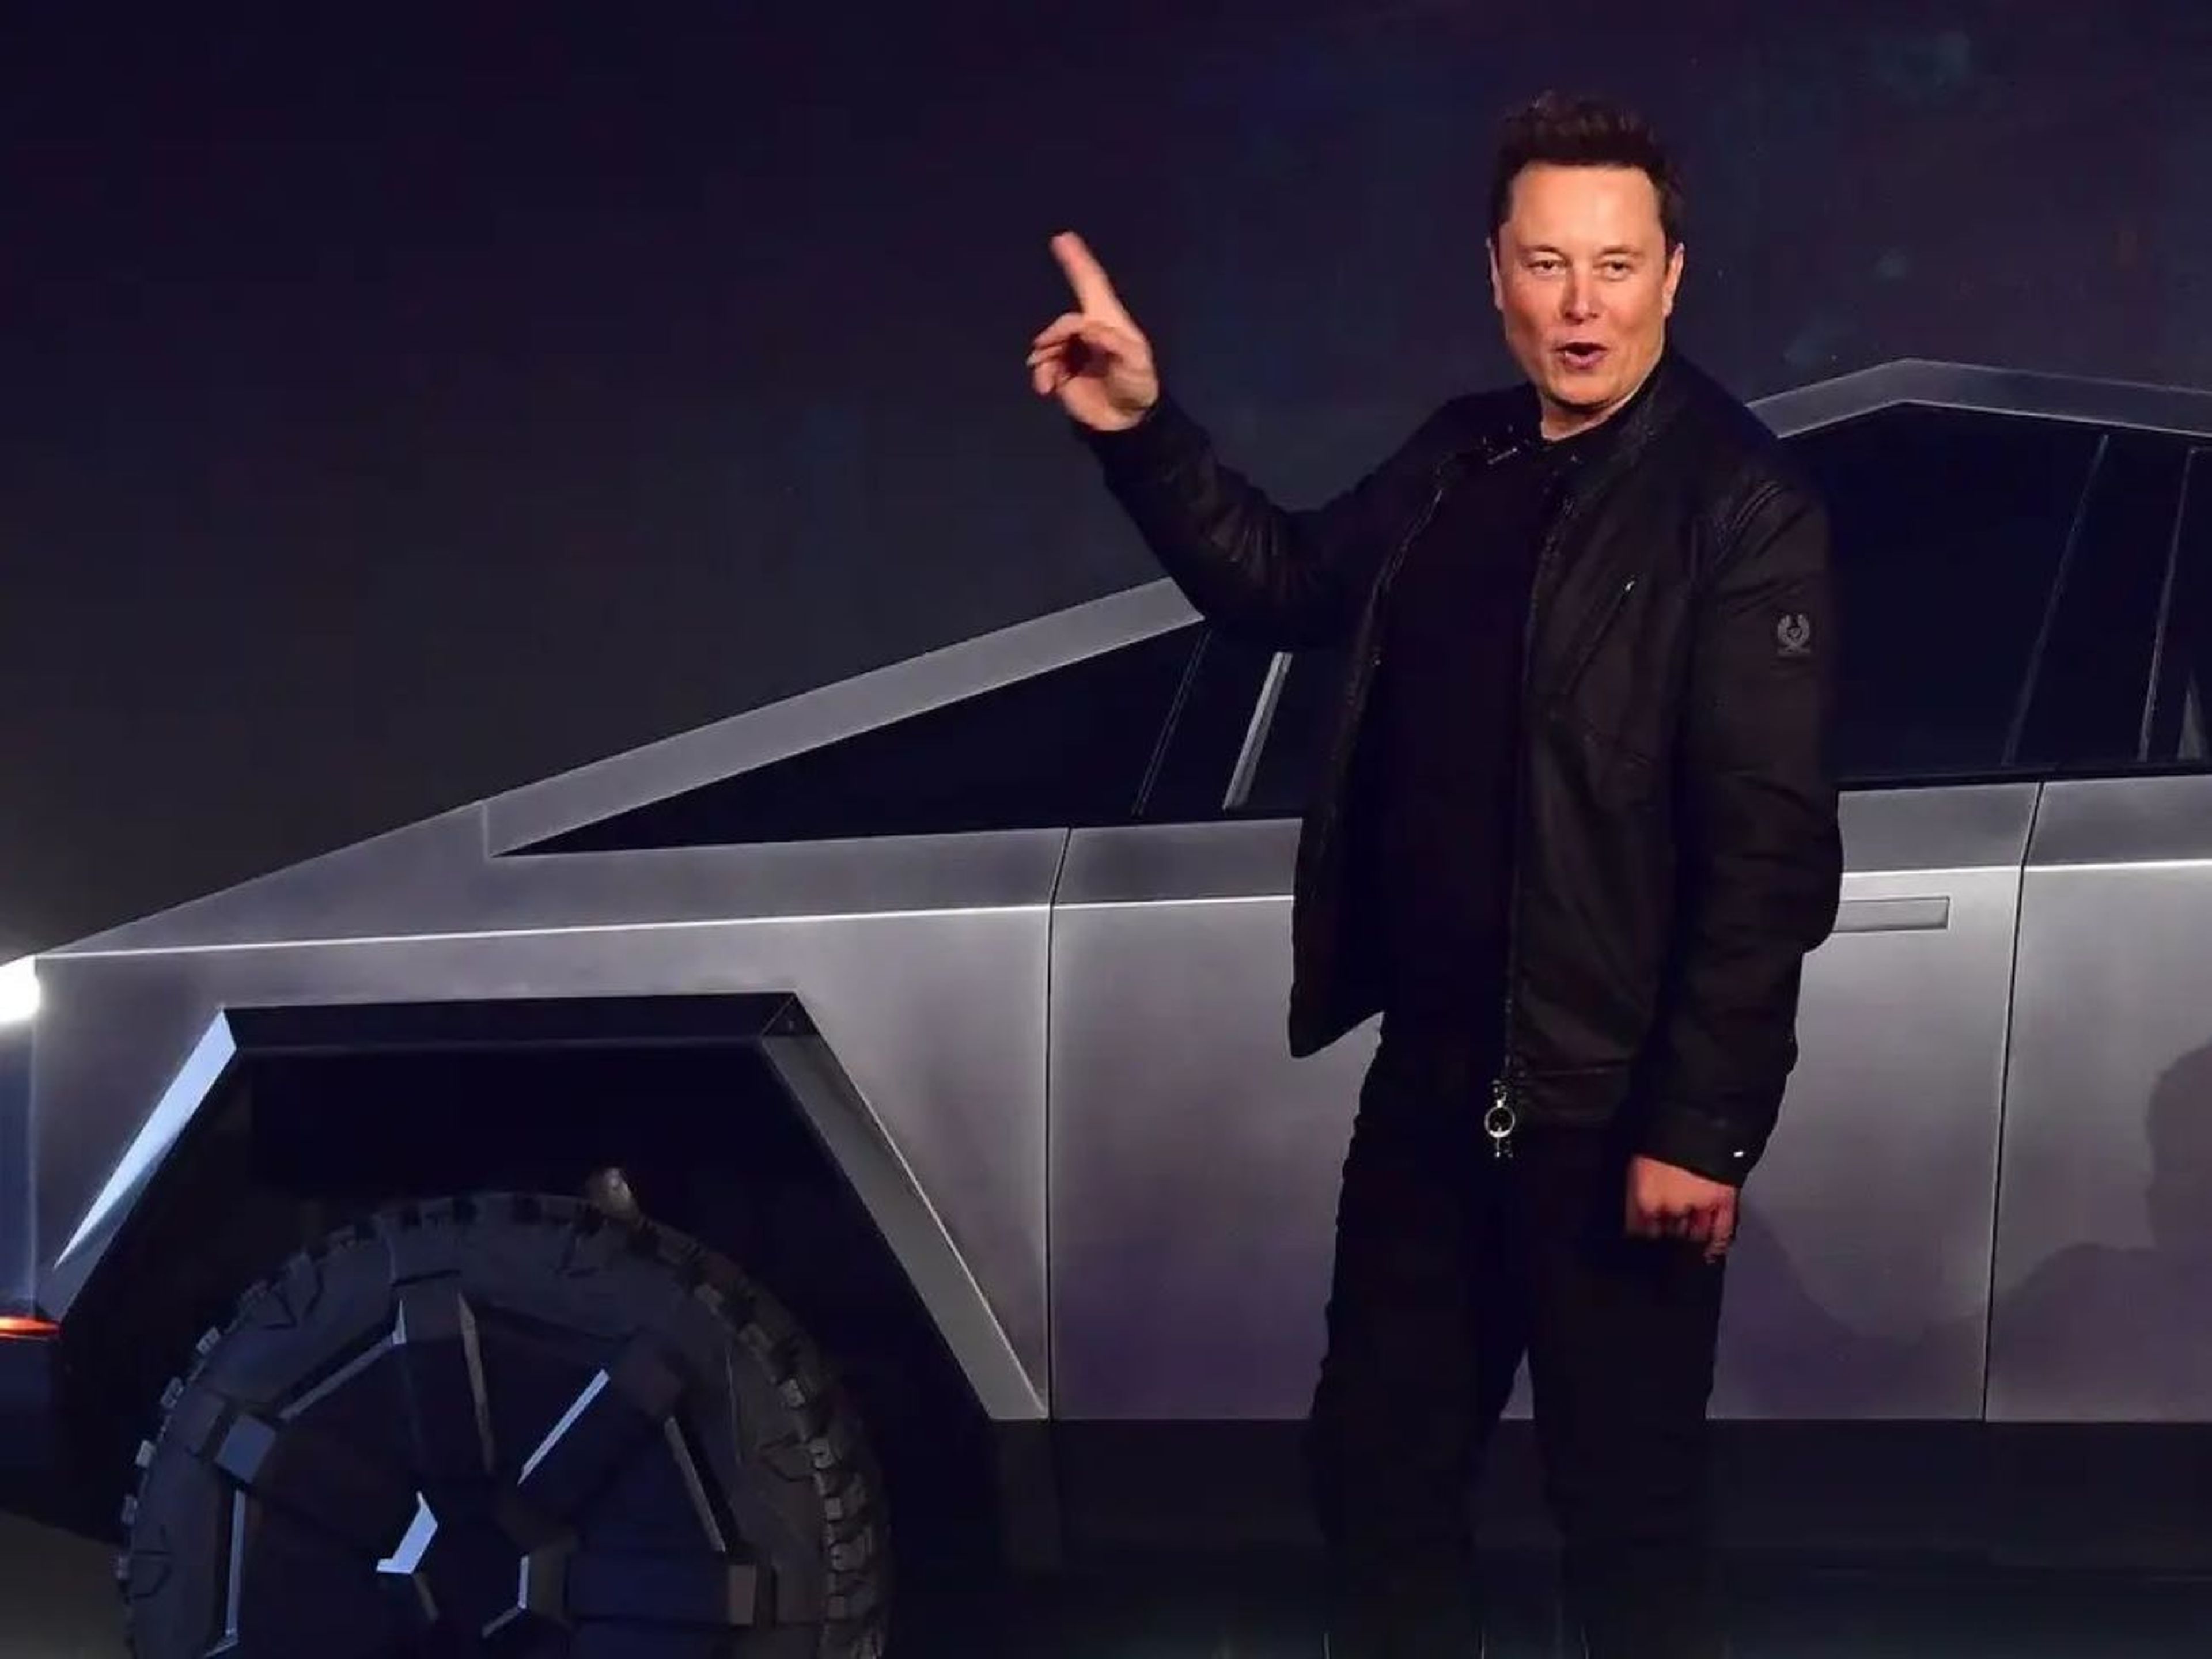 El cofundador y CEO de Tesla, Elon Musk, en la presentación del Tesla Cybertruck, totalmente eléctrico y alimentado por batería, en el Centro de Diseño de Tesla (Hawthorne, California, EEUU), en 2019.